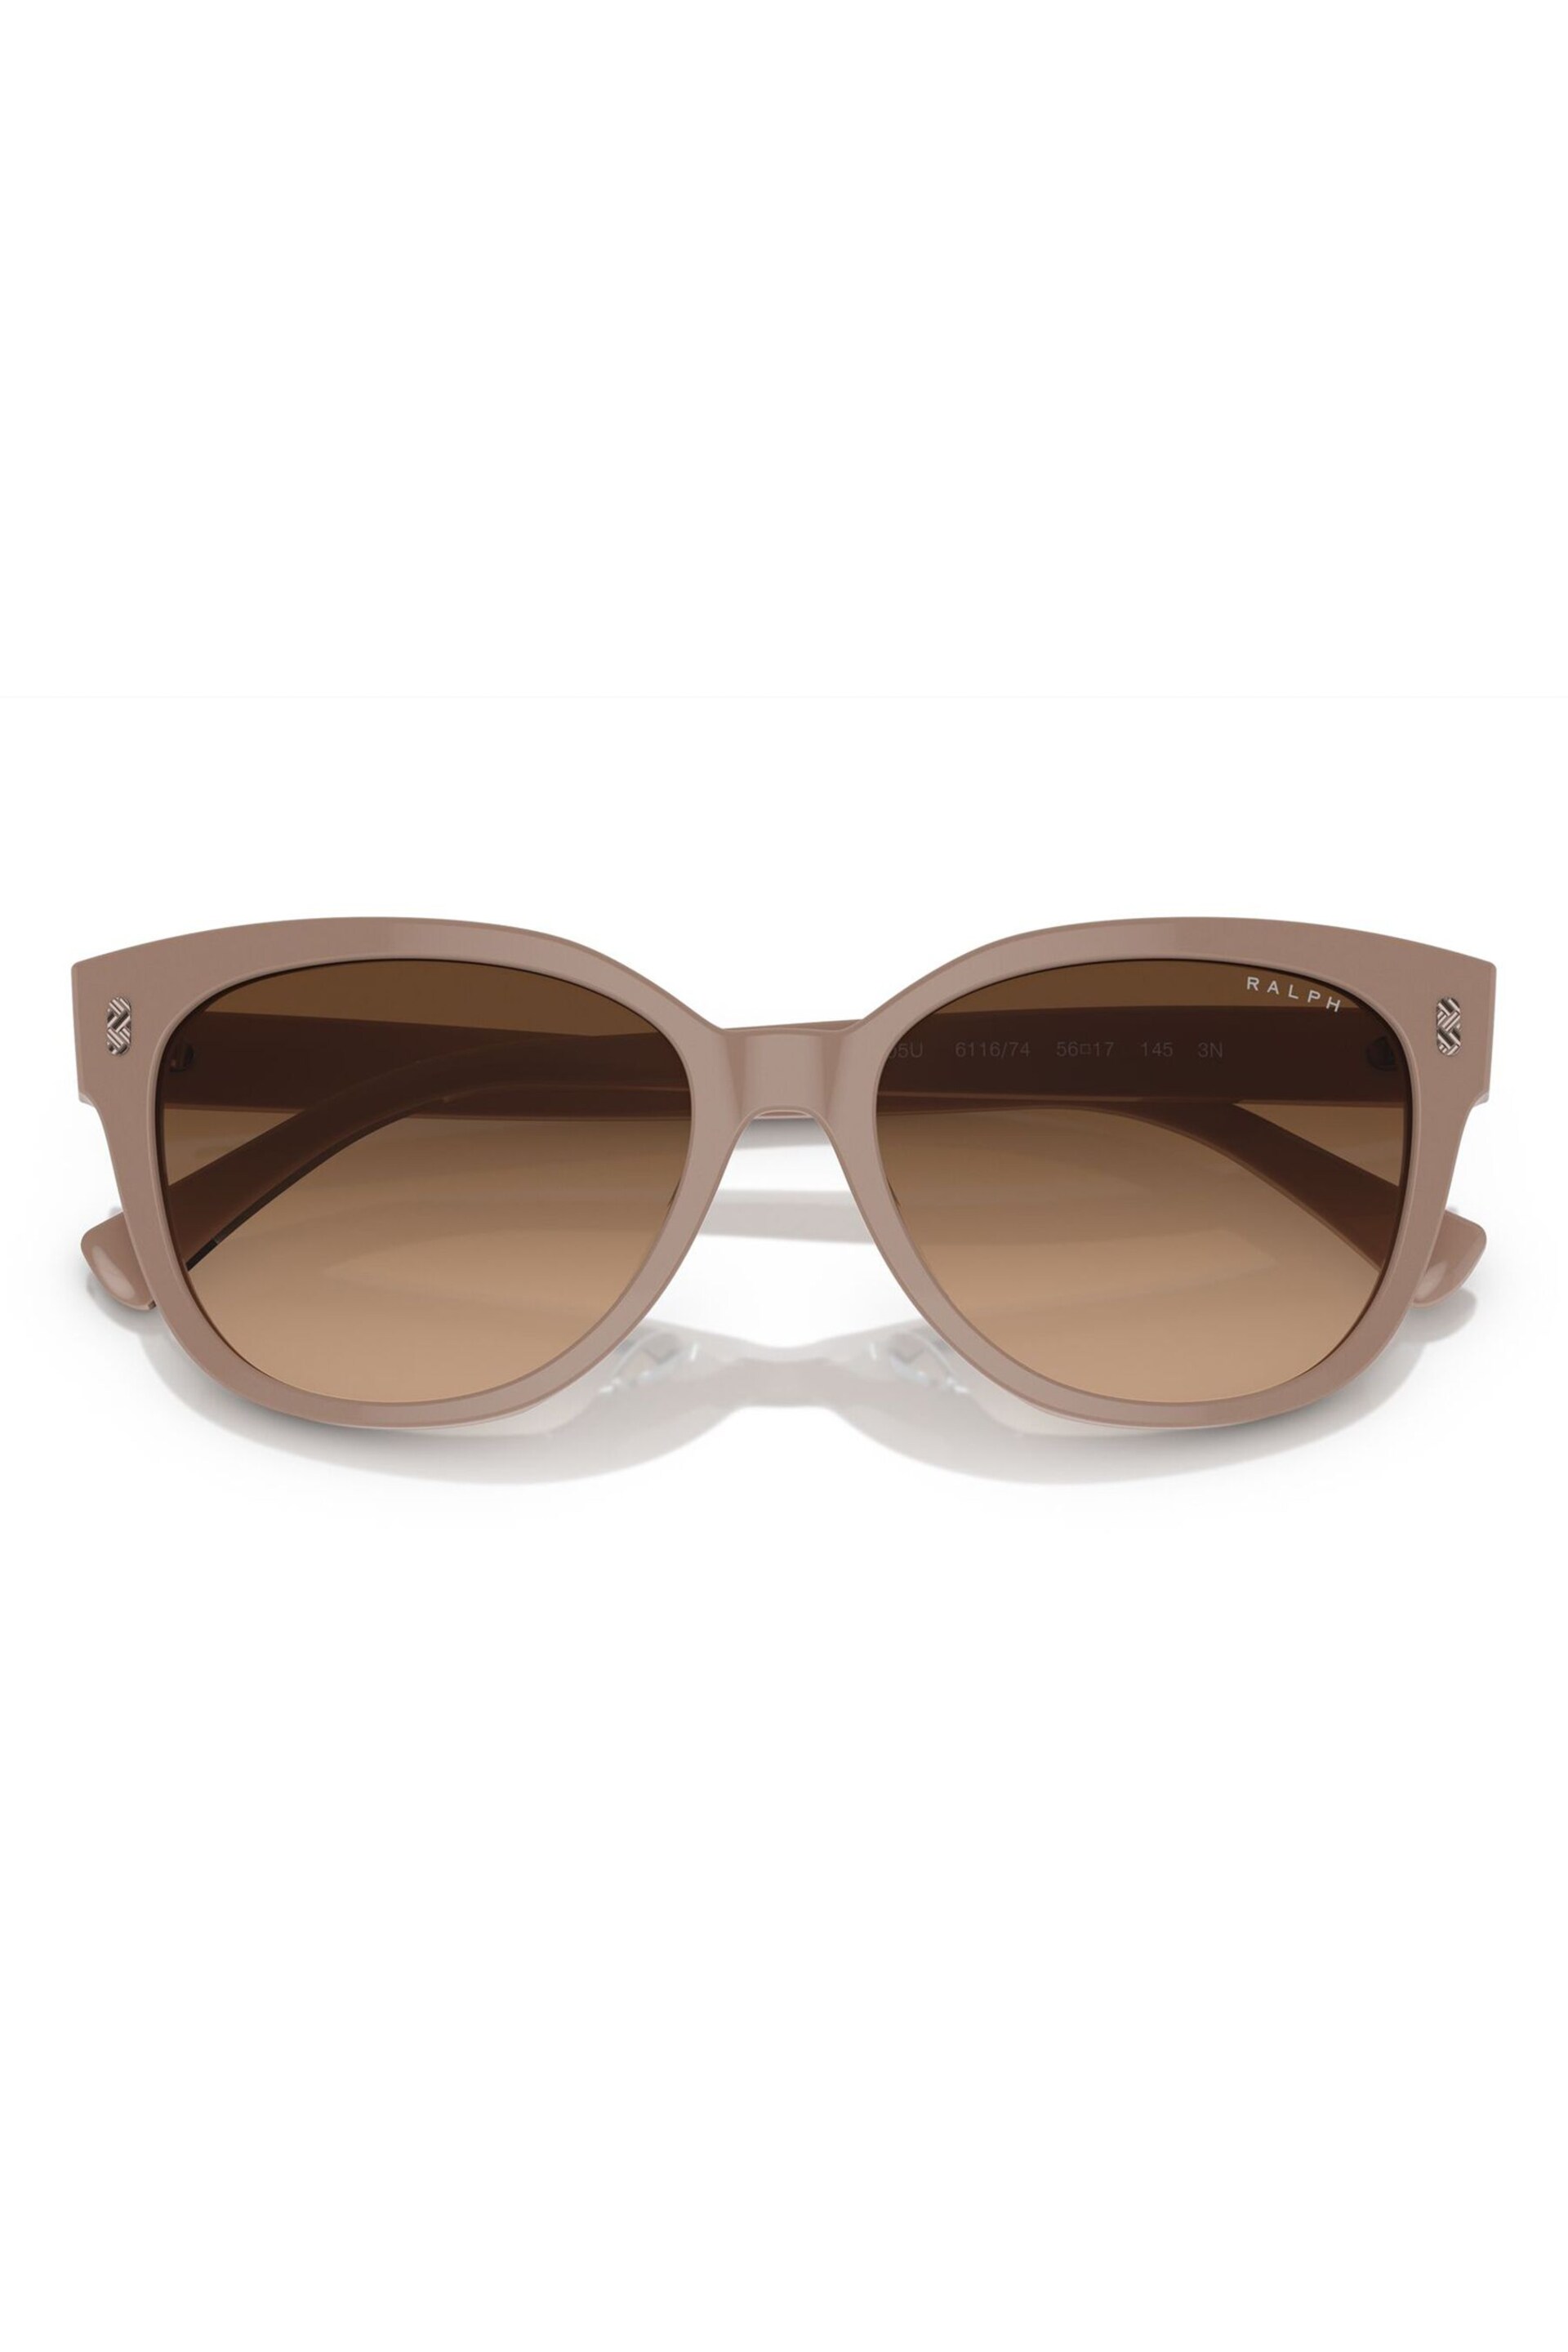 Emporio Armani EA2033 Brown Sunglasses - Image 3 of 5